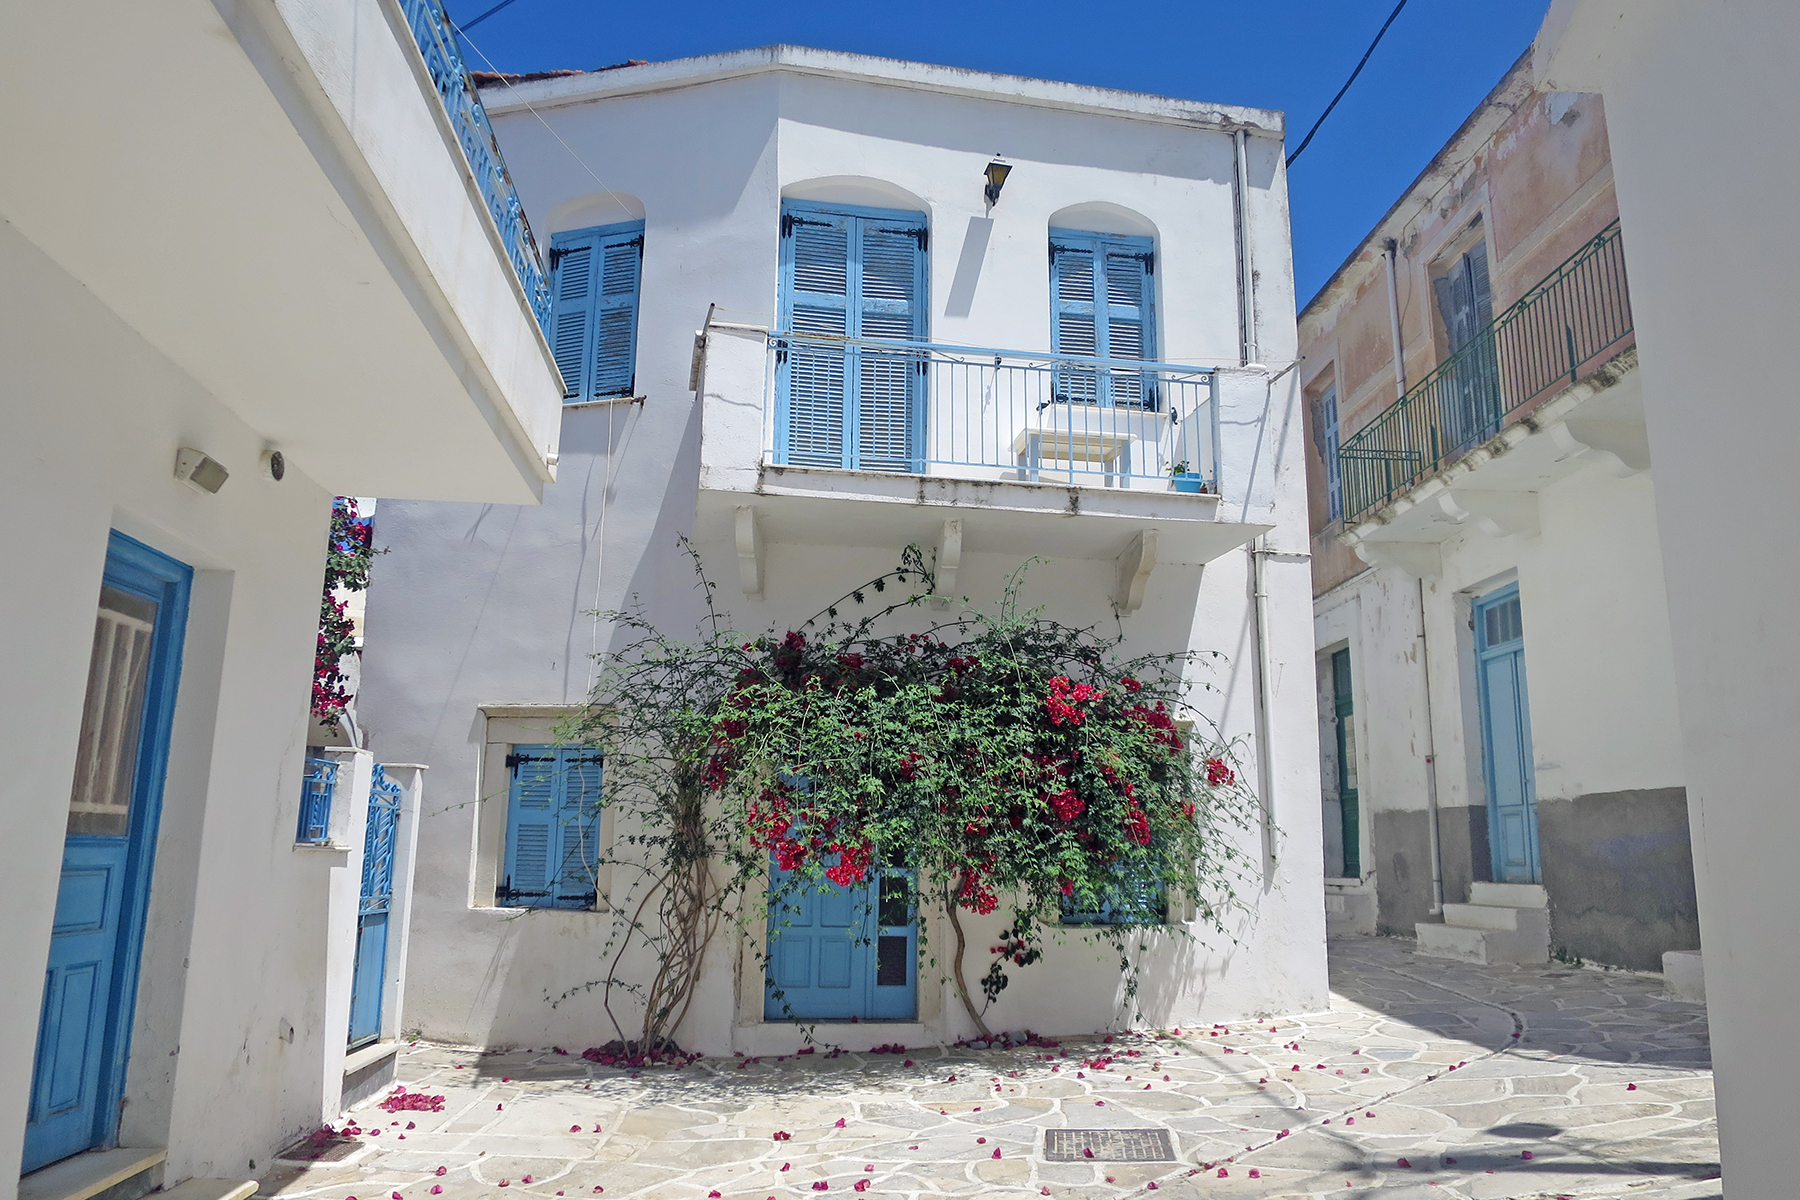 Kykladeninsel Naxos: Urlaub machen, wo Götter einst Geschichten erzählten